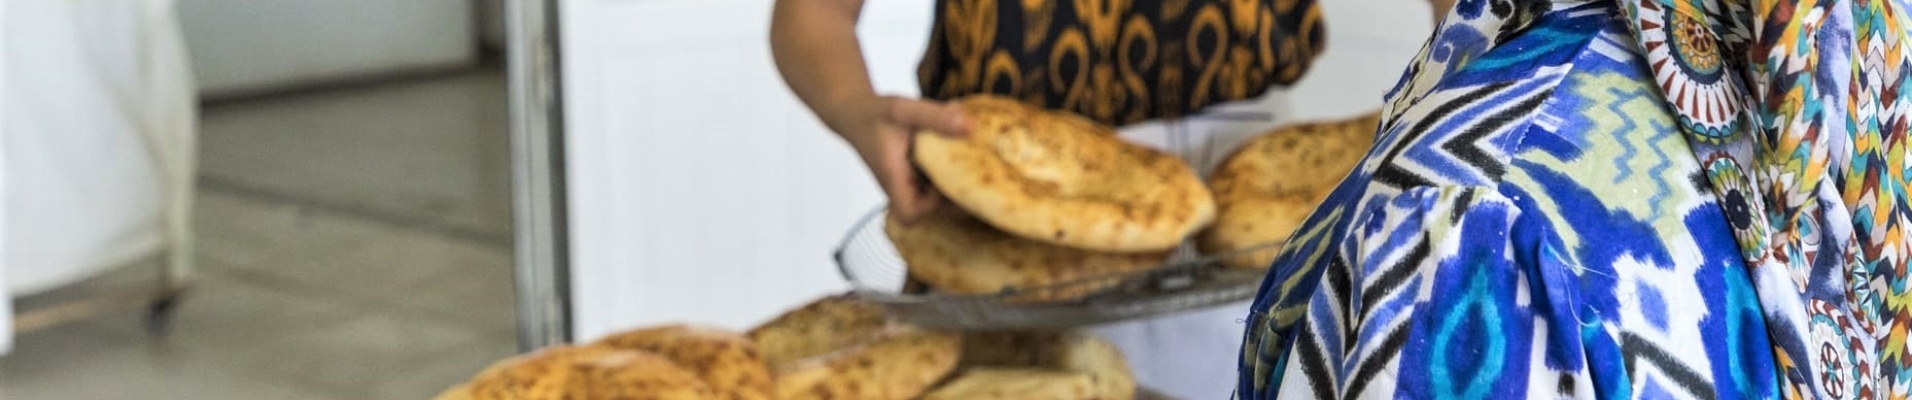 Vente du pain traditionnel au Bazar, Tachkent